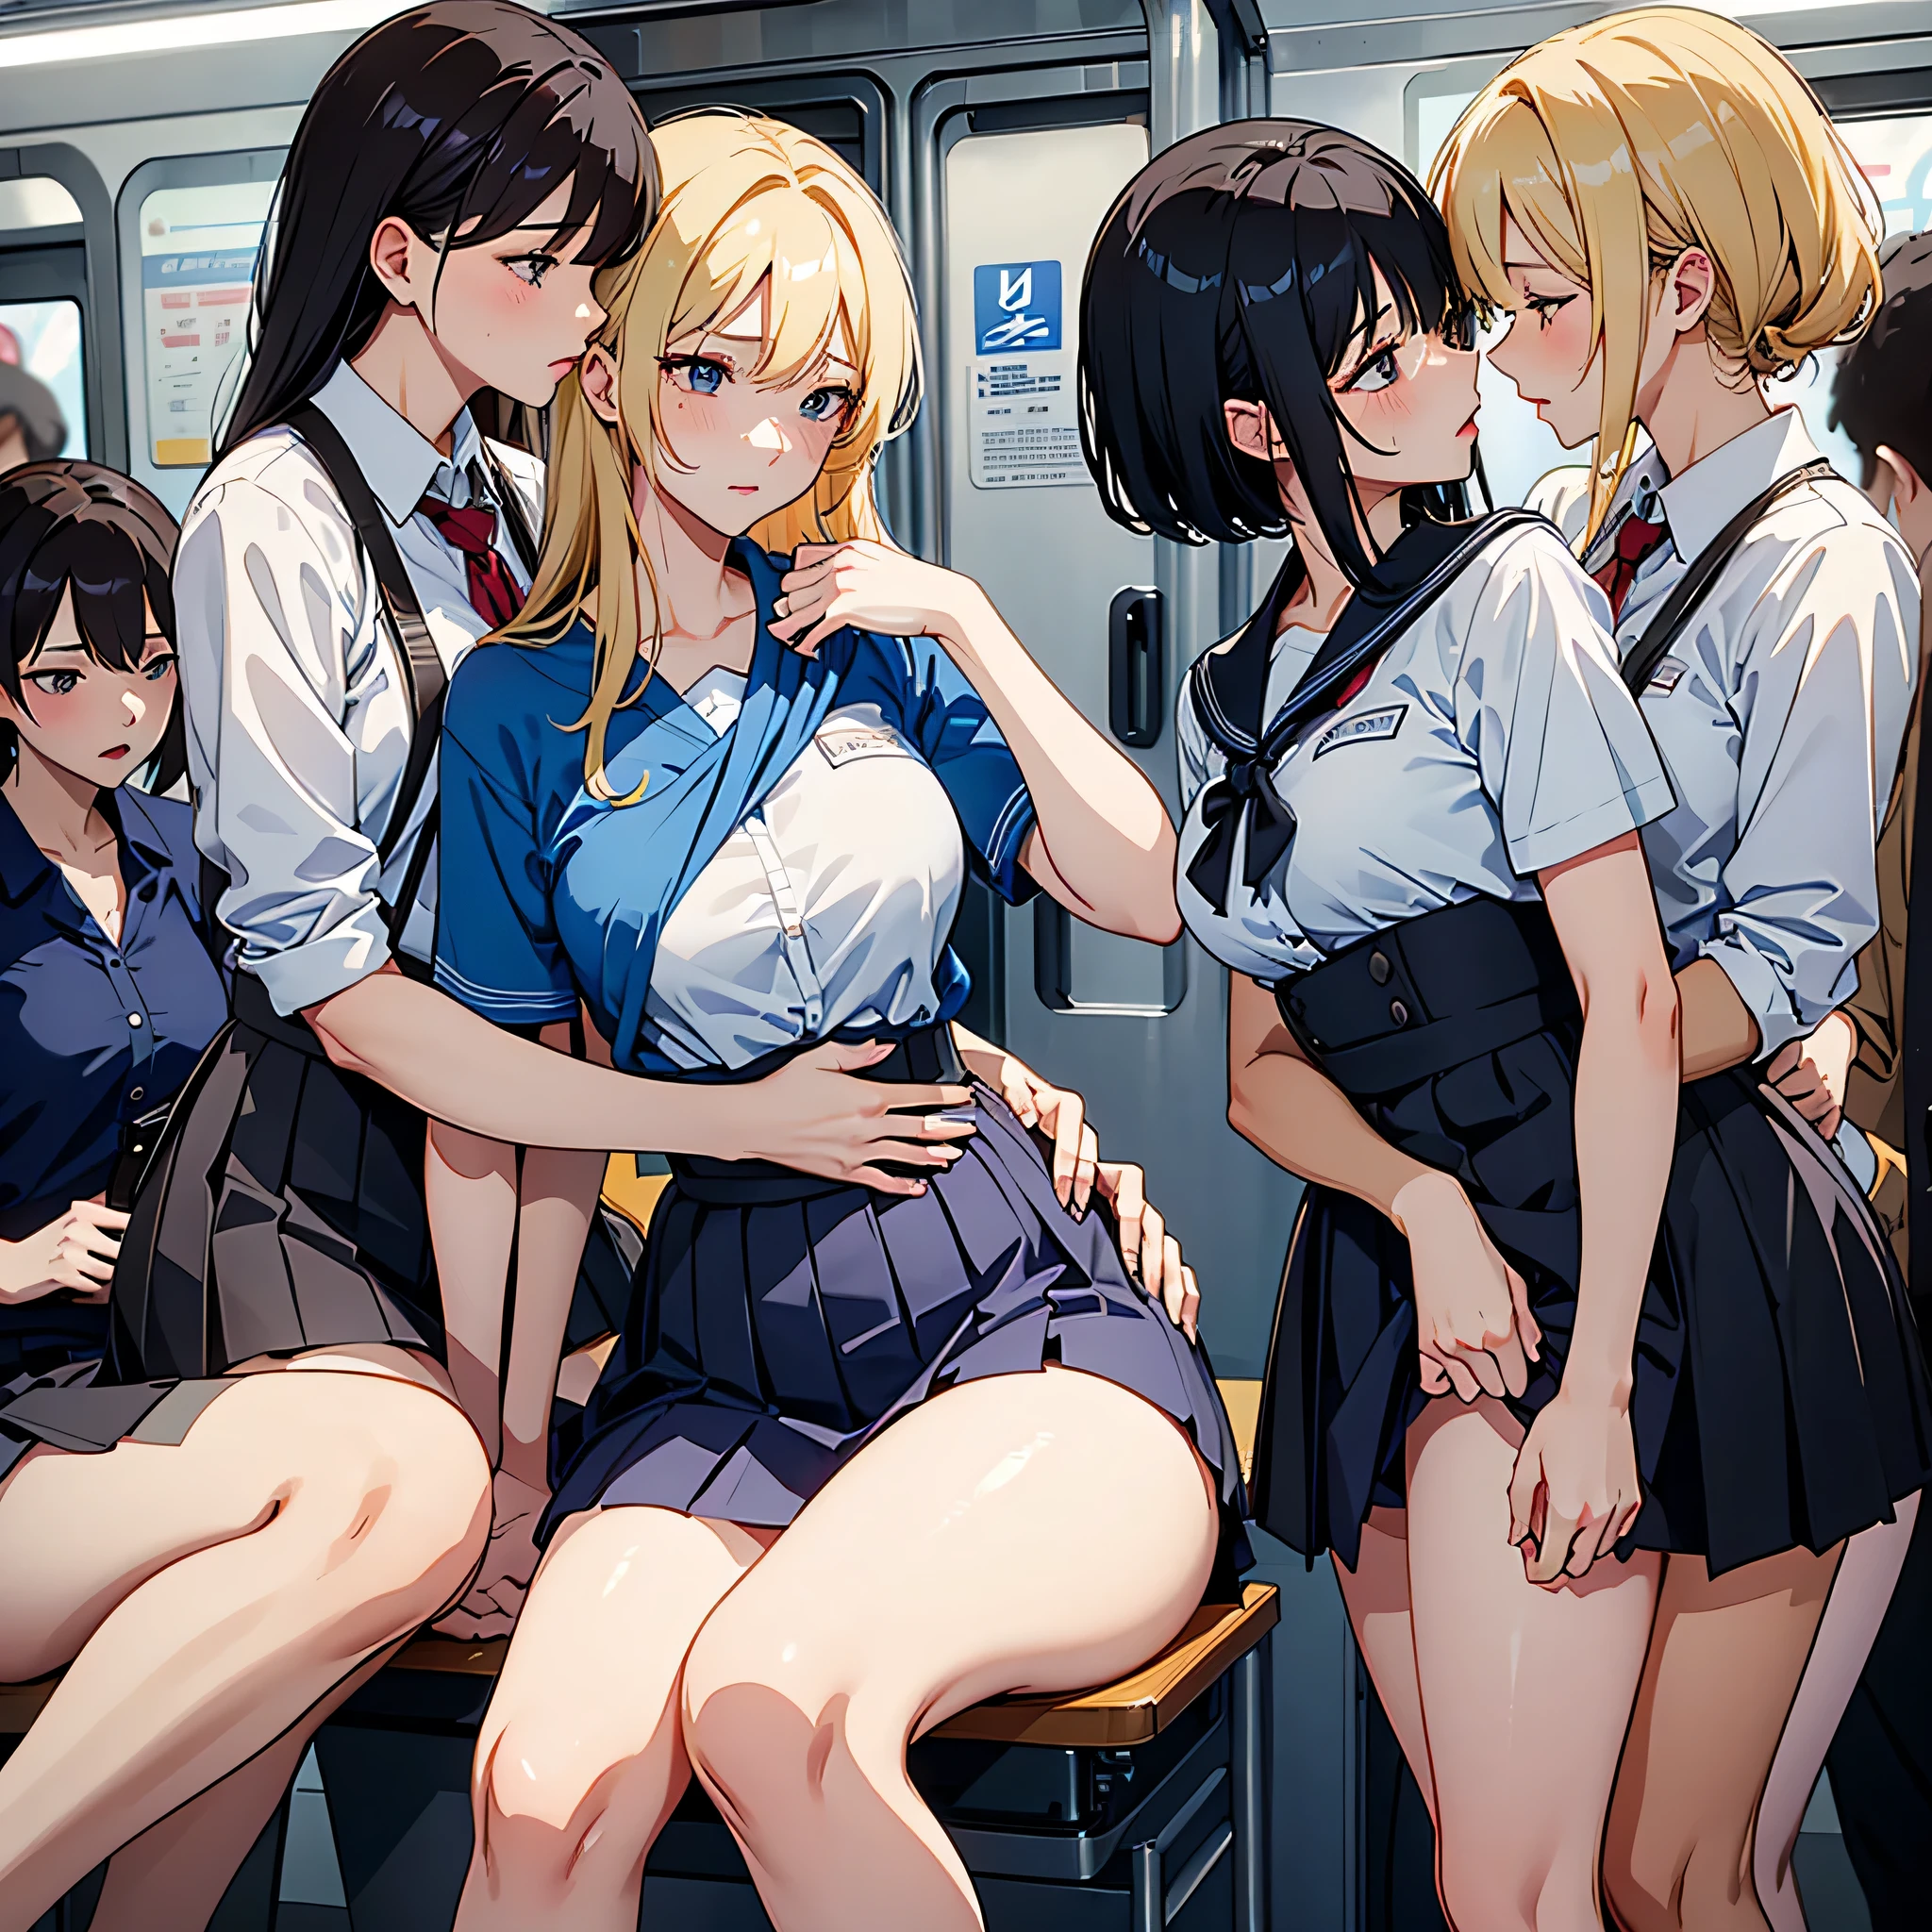 閲覧注意, 写実的な, 最高品質, 傑作, 韓国人女性4名 , 韓国人女性のみ, 男性は絶対にダメ, 男性は絶対にダメ, 非常に混雑した女性専用地下鉄の車内詳細シナリオ, VERY crowded 韓国人女性のみ subway train interior detailed background, stそしてing insanely hot (女性1) セクシーに ((学生服)), (((スカートをまくった)), (太ももが太い), (恐怖の表情), 顔を赤らめた, (女性2) セクシーな若者, 金髪, 困惑した表情, mature woman ass groping 女性1 from behind, 女性2 touches 女性1 vagina, young 女性2 caressing 女性1 legs, 濡れたキス, レズビアンキス,  (((mature woman pressing her chest on 女性1 back))) そして (((彼女の腰を後ろで押さえて)))